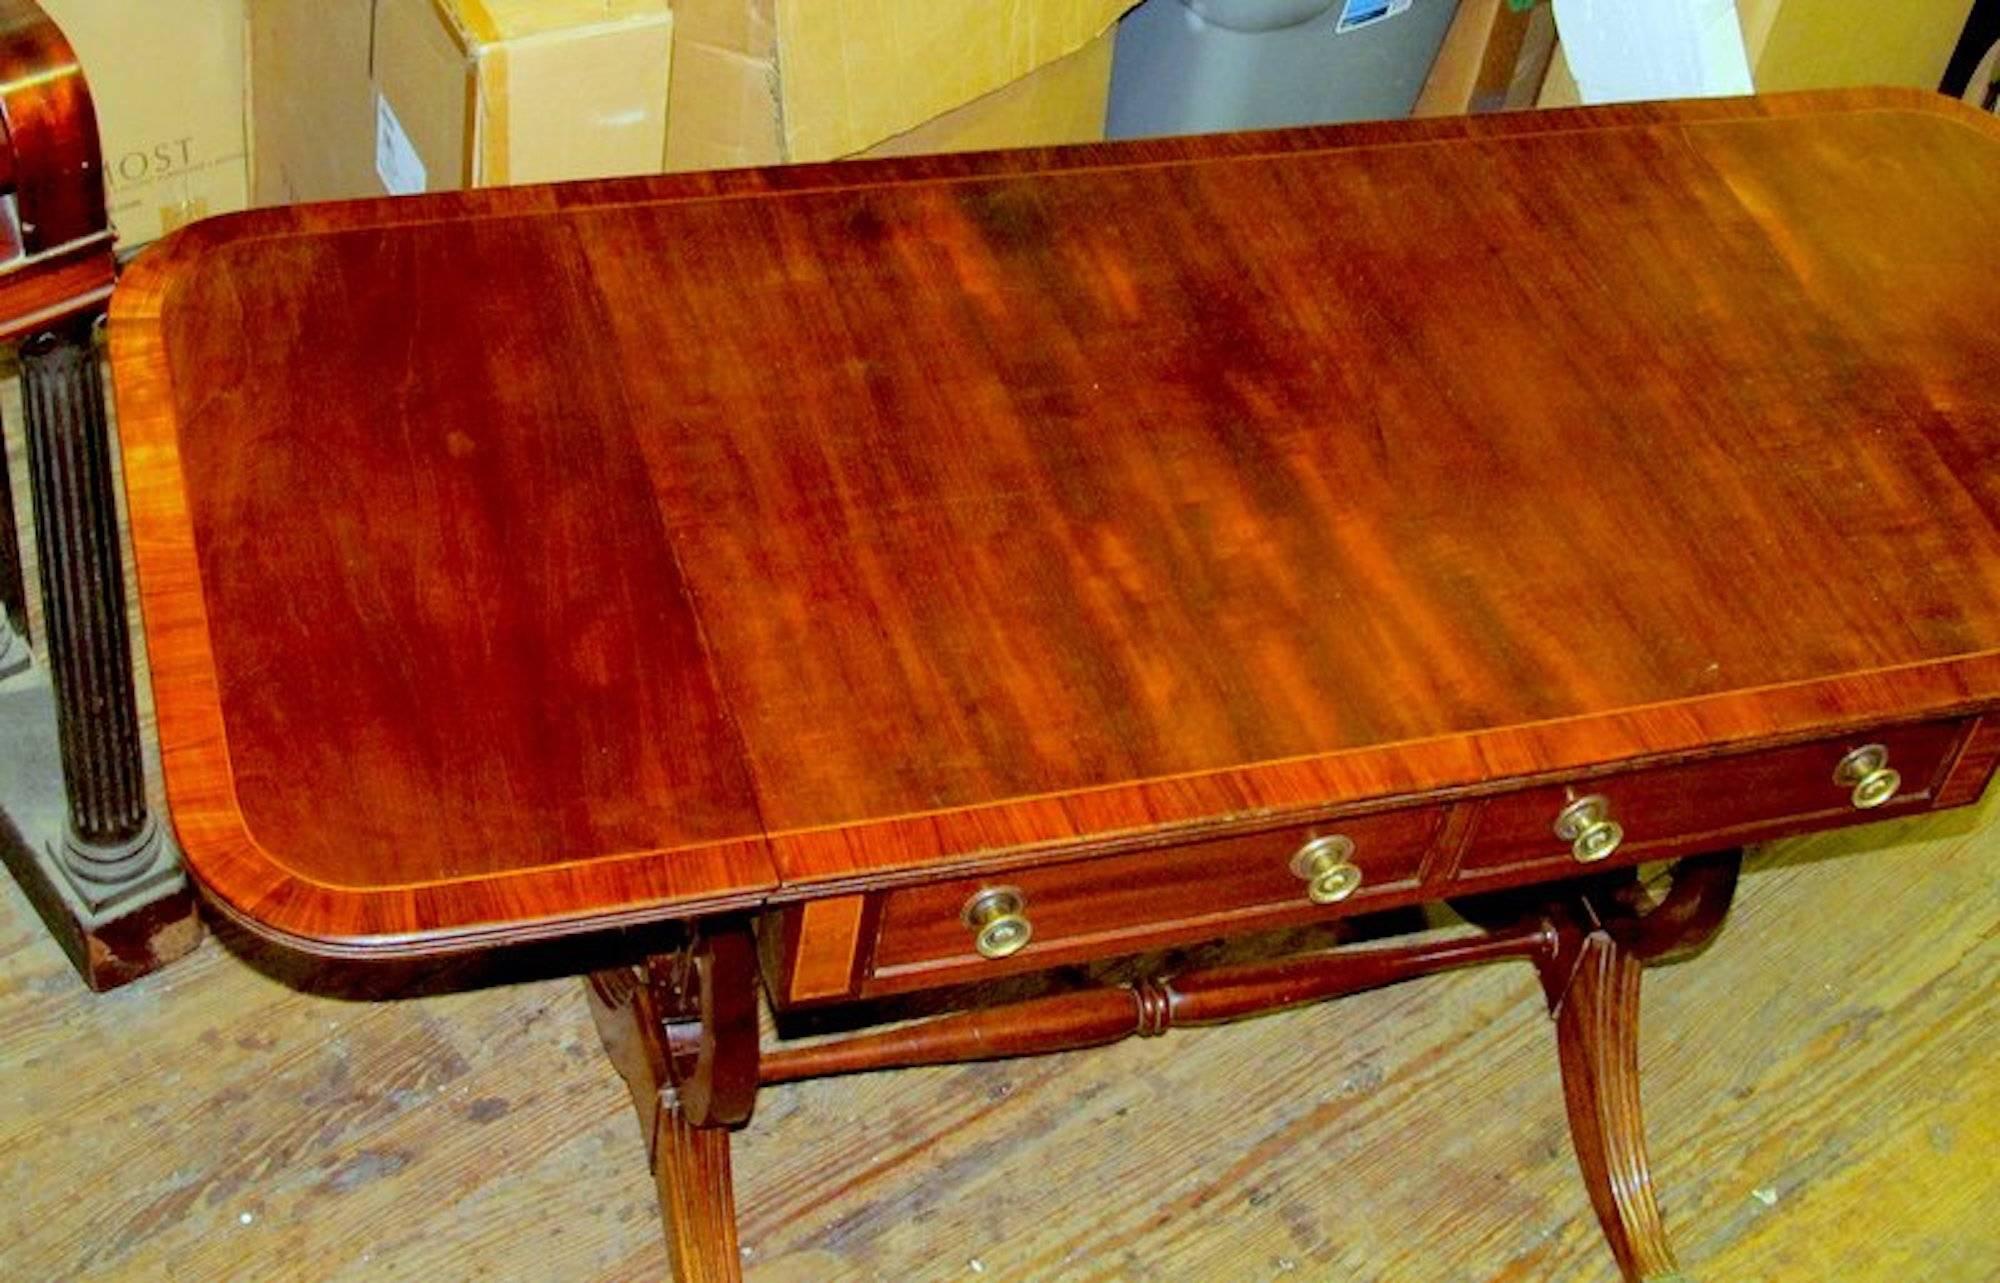 Fine et rare table de canapé Regency en acajou marqueté de la période George IV, avec de beaux supports latéraux en forme de lyre et des pieds évasés terminés par des roulettes en laiton moulé.

Dimensions fermées : 29 1/2